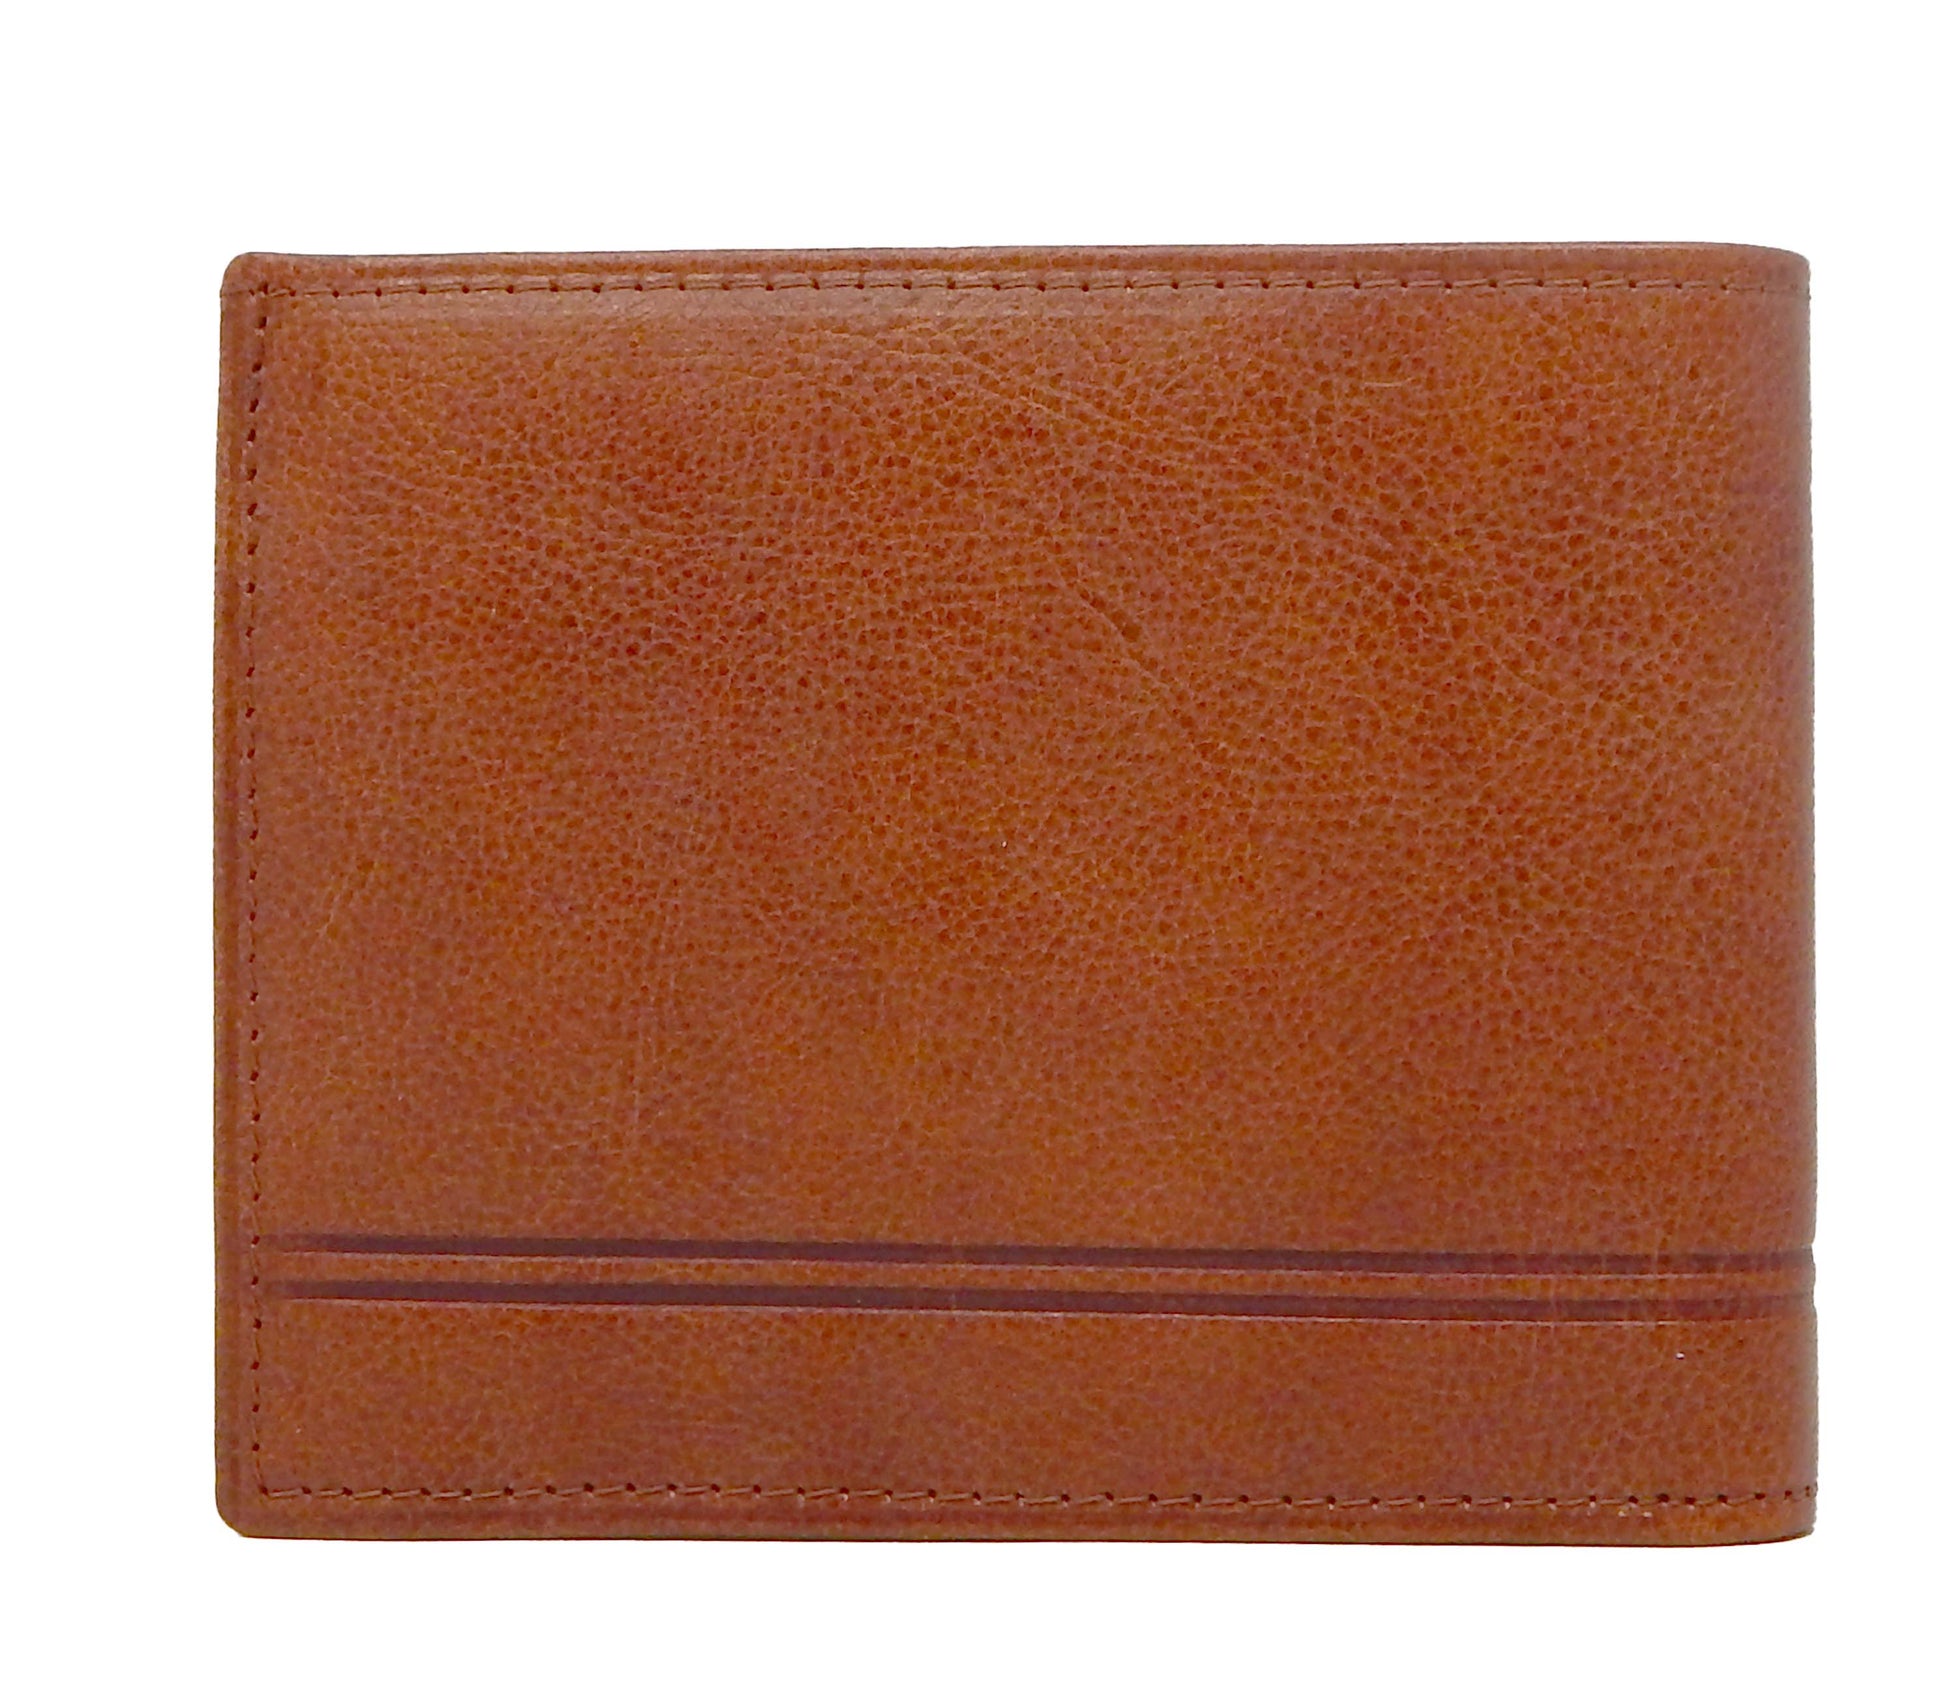 #color_ SaddleBrown | Cavalinho Men's Trifold Leather Wallet - SaddleBrown - 28610505.13.99_3